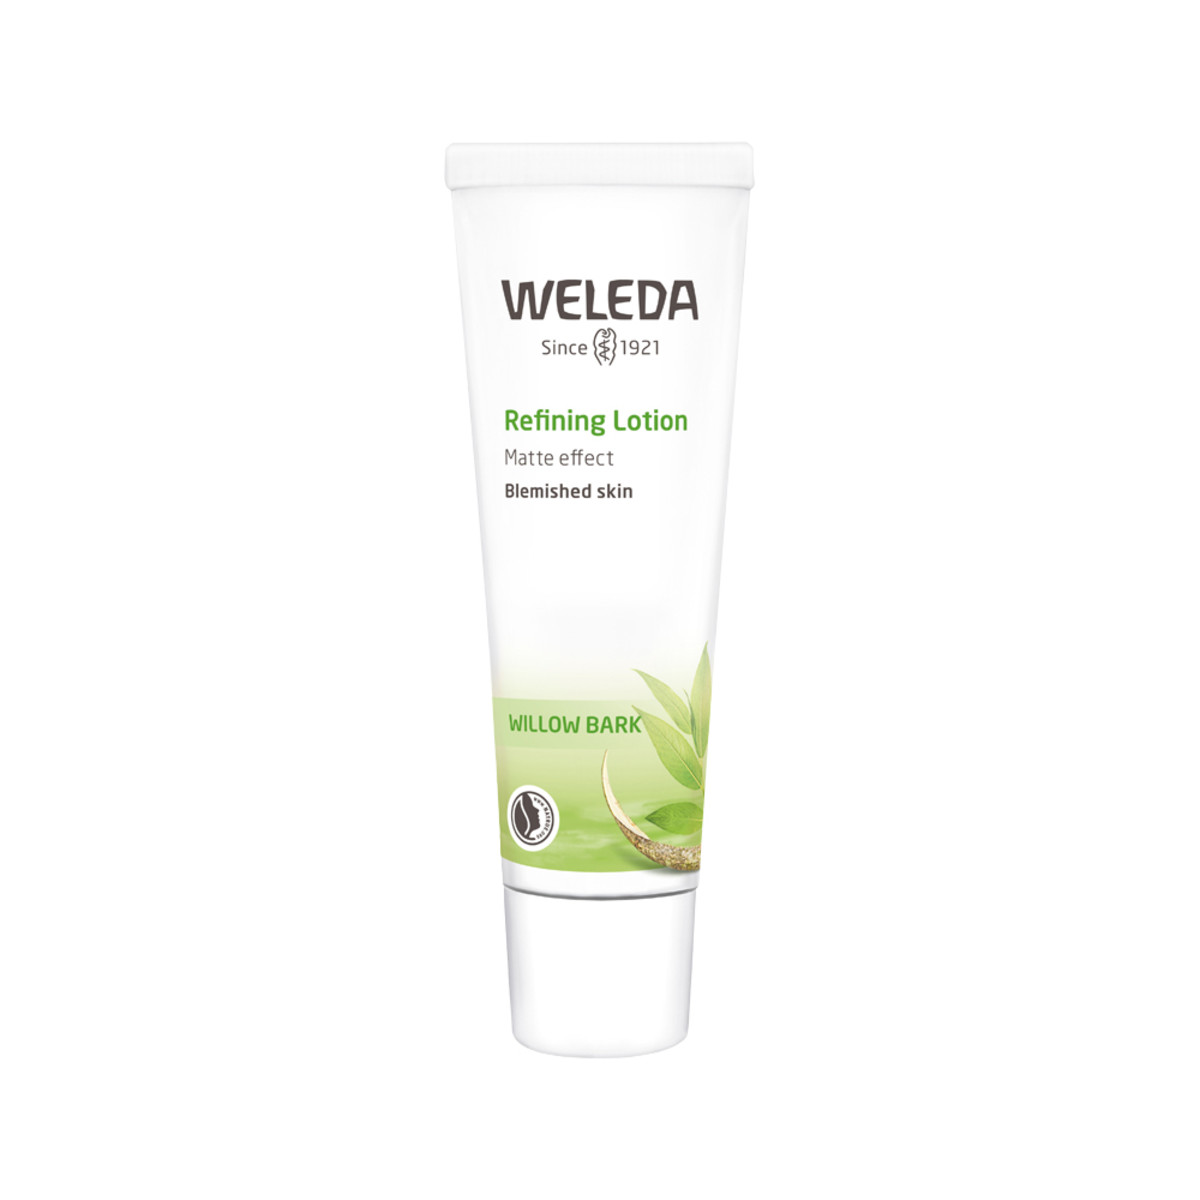 WELEDA - Refining Lotion Willow Bark (Matte Effect - Blemished Skin)